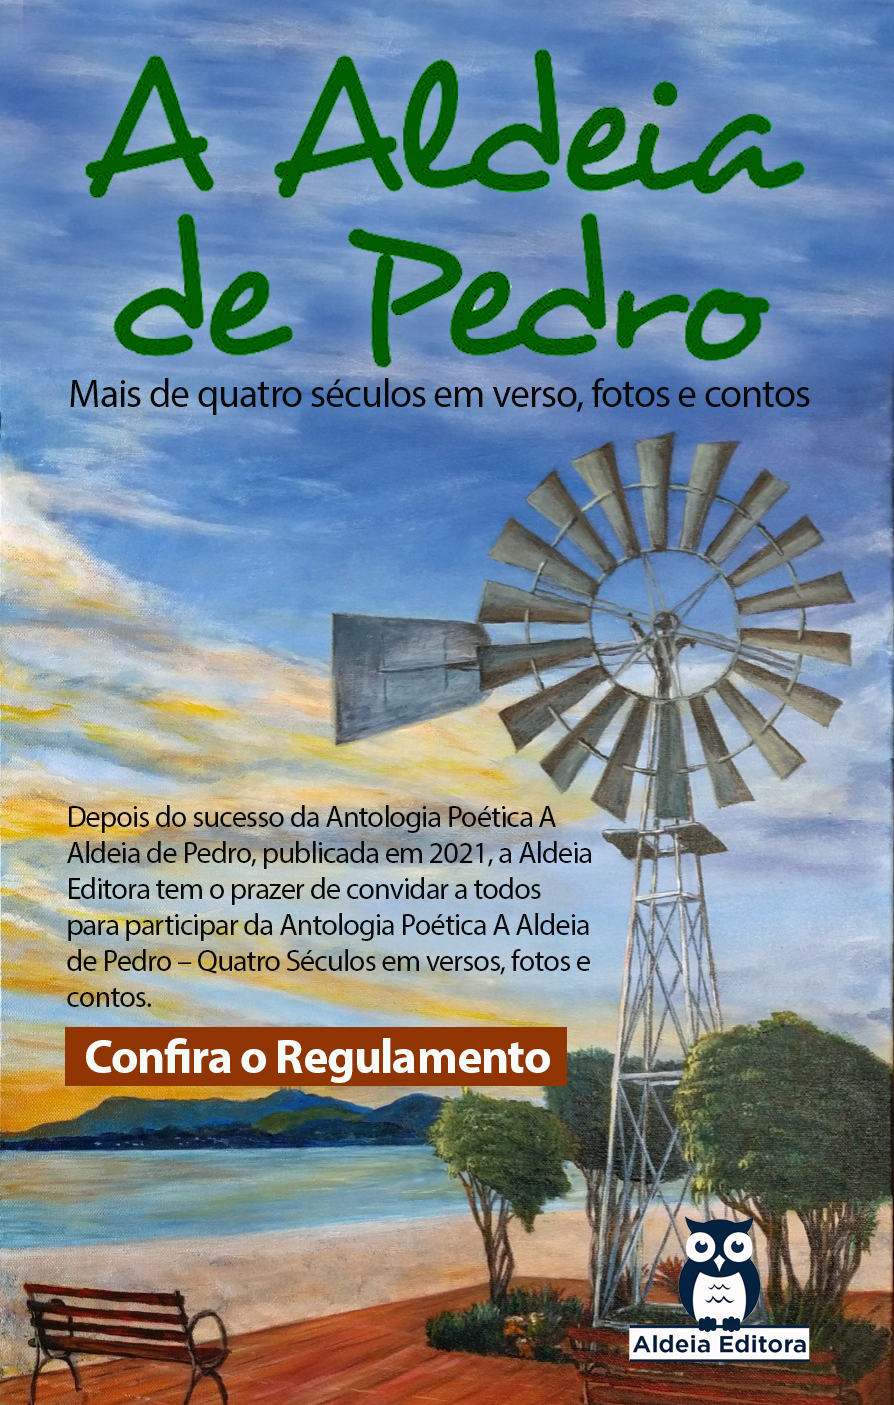 Aldeia Editora lança edital do "Aldeia de Pedro - Mais de quatro séculos em verso, fotos e contos"